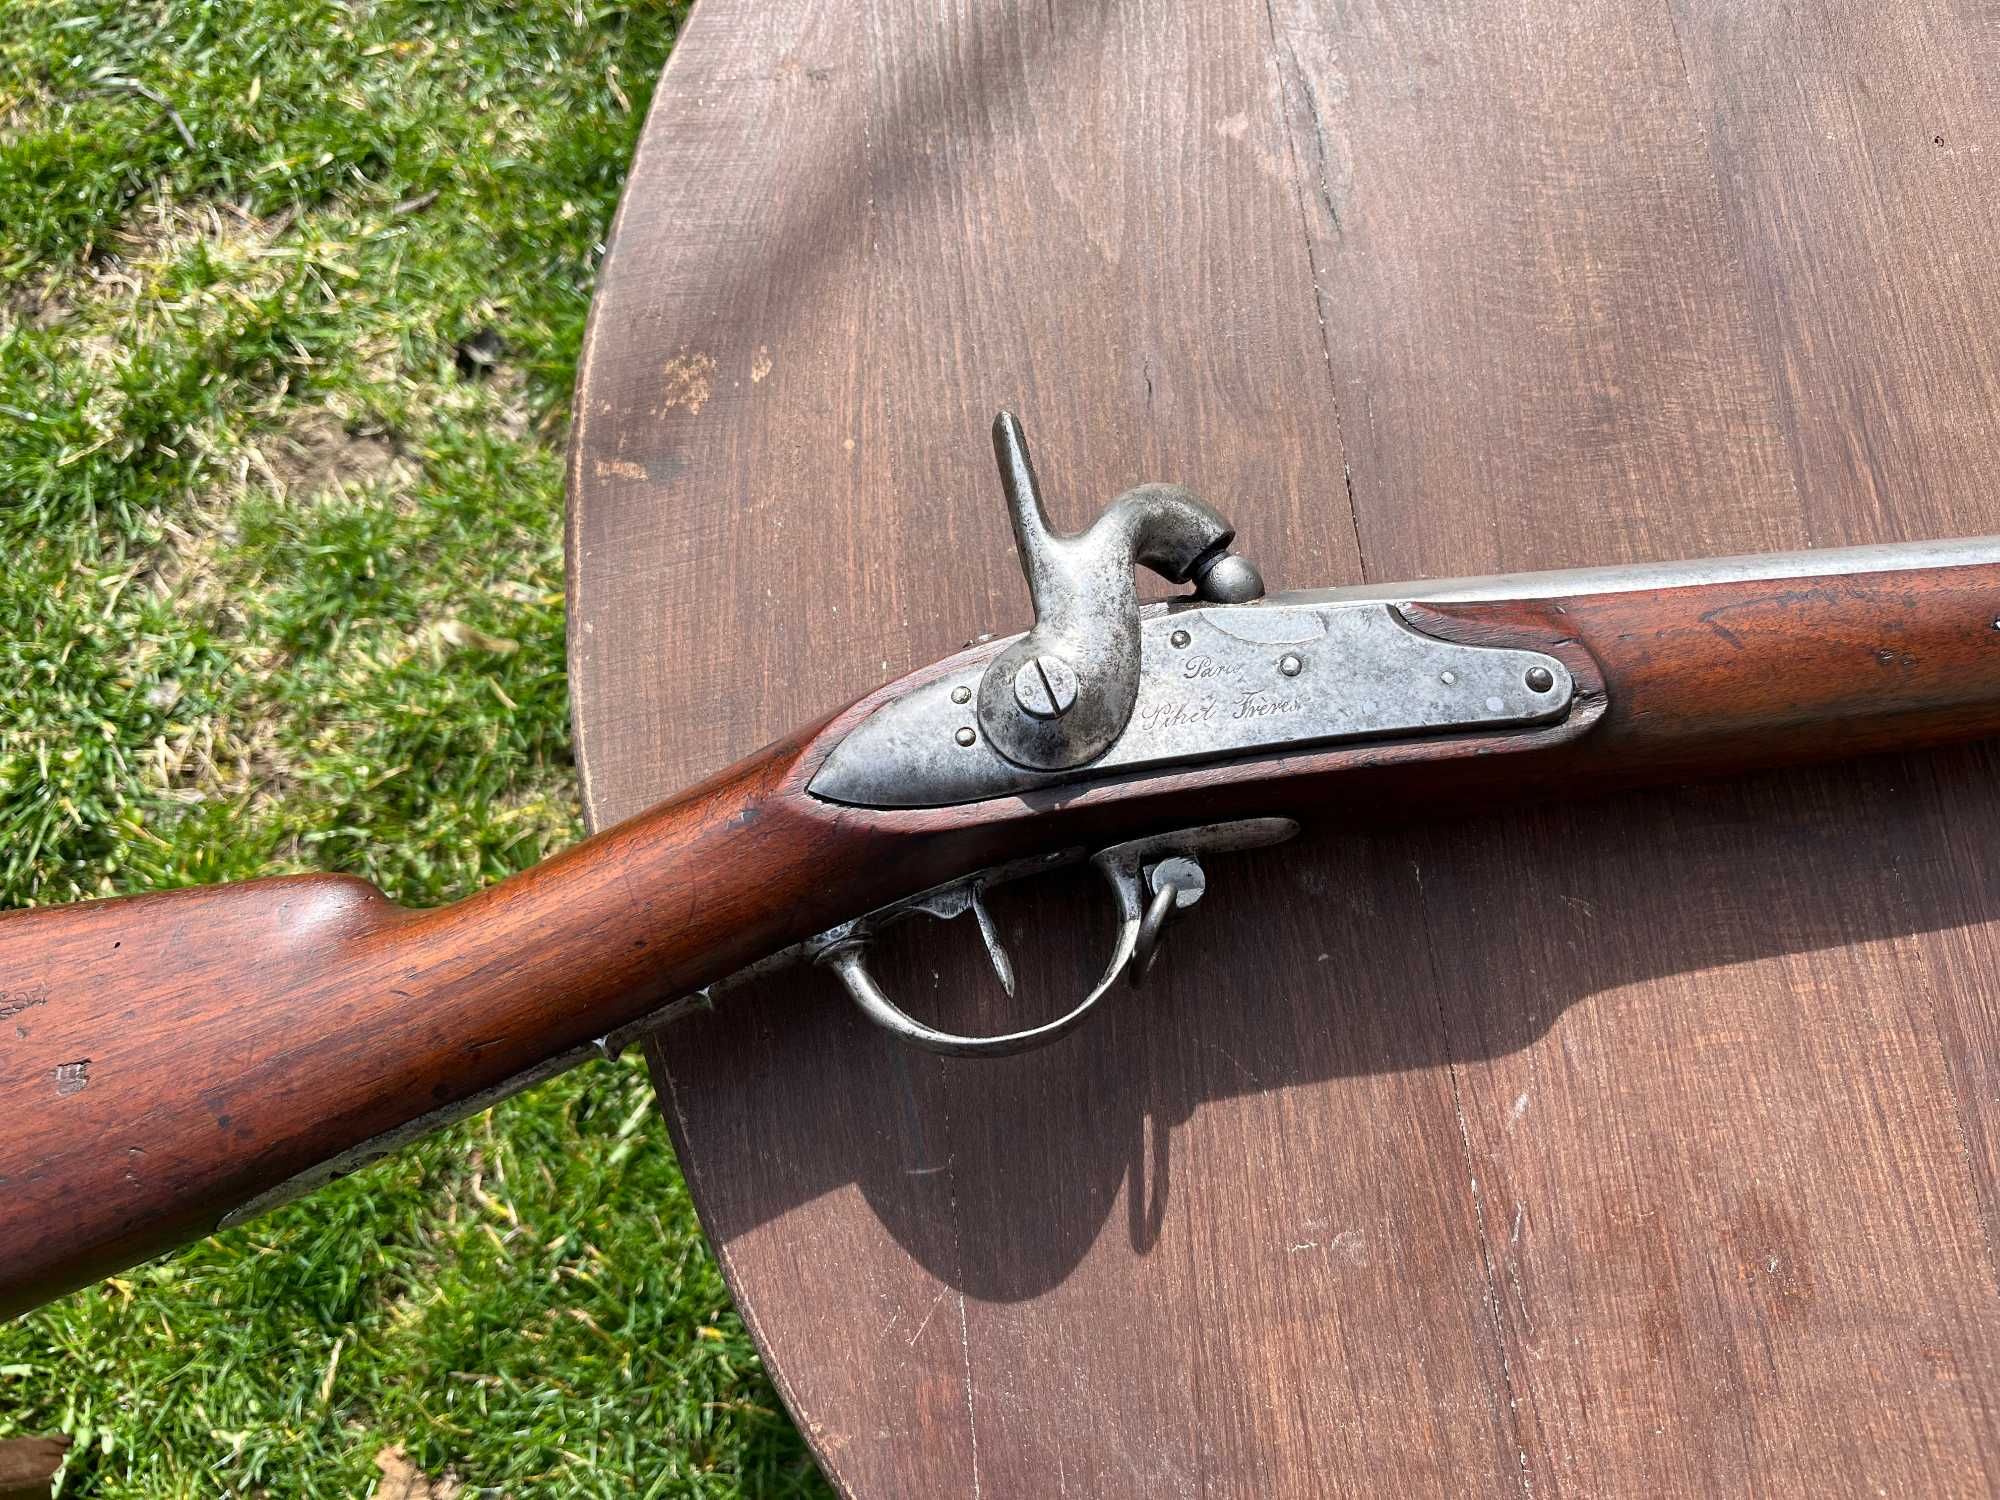 Капсулна пушка, 19 век